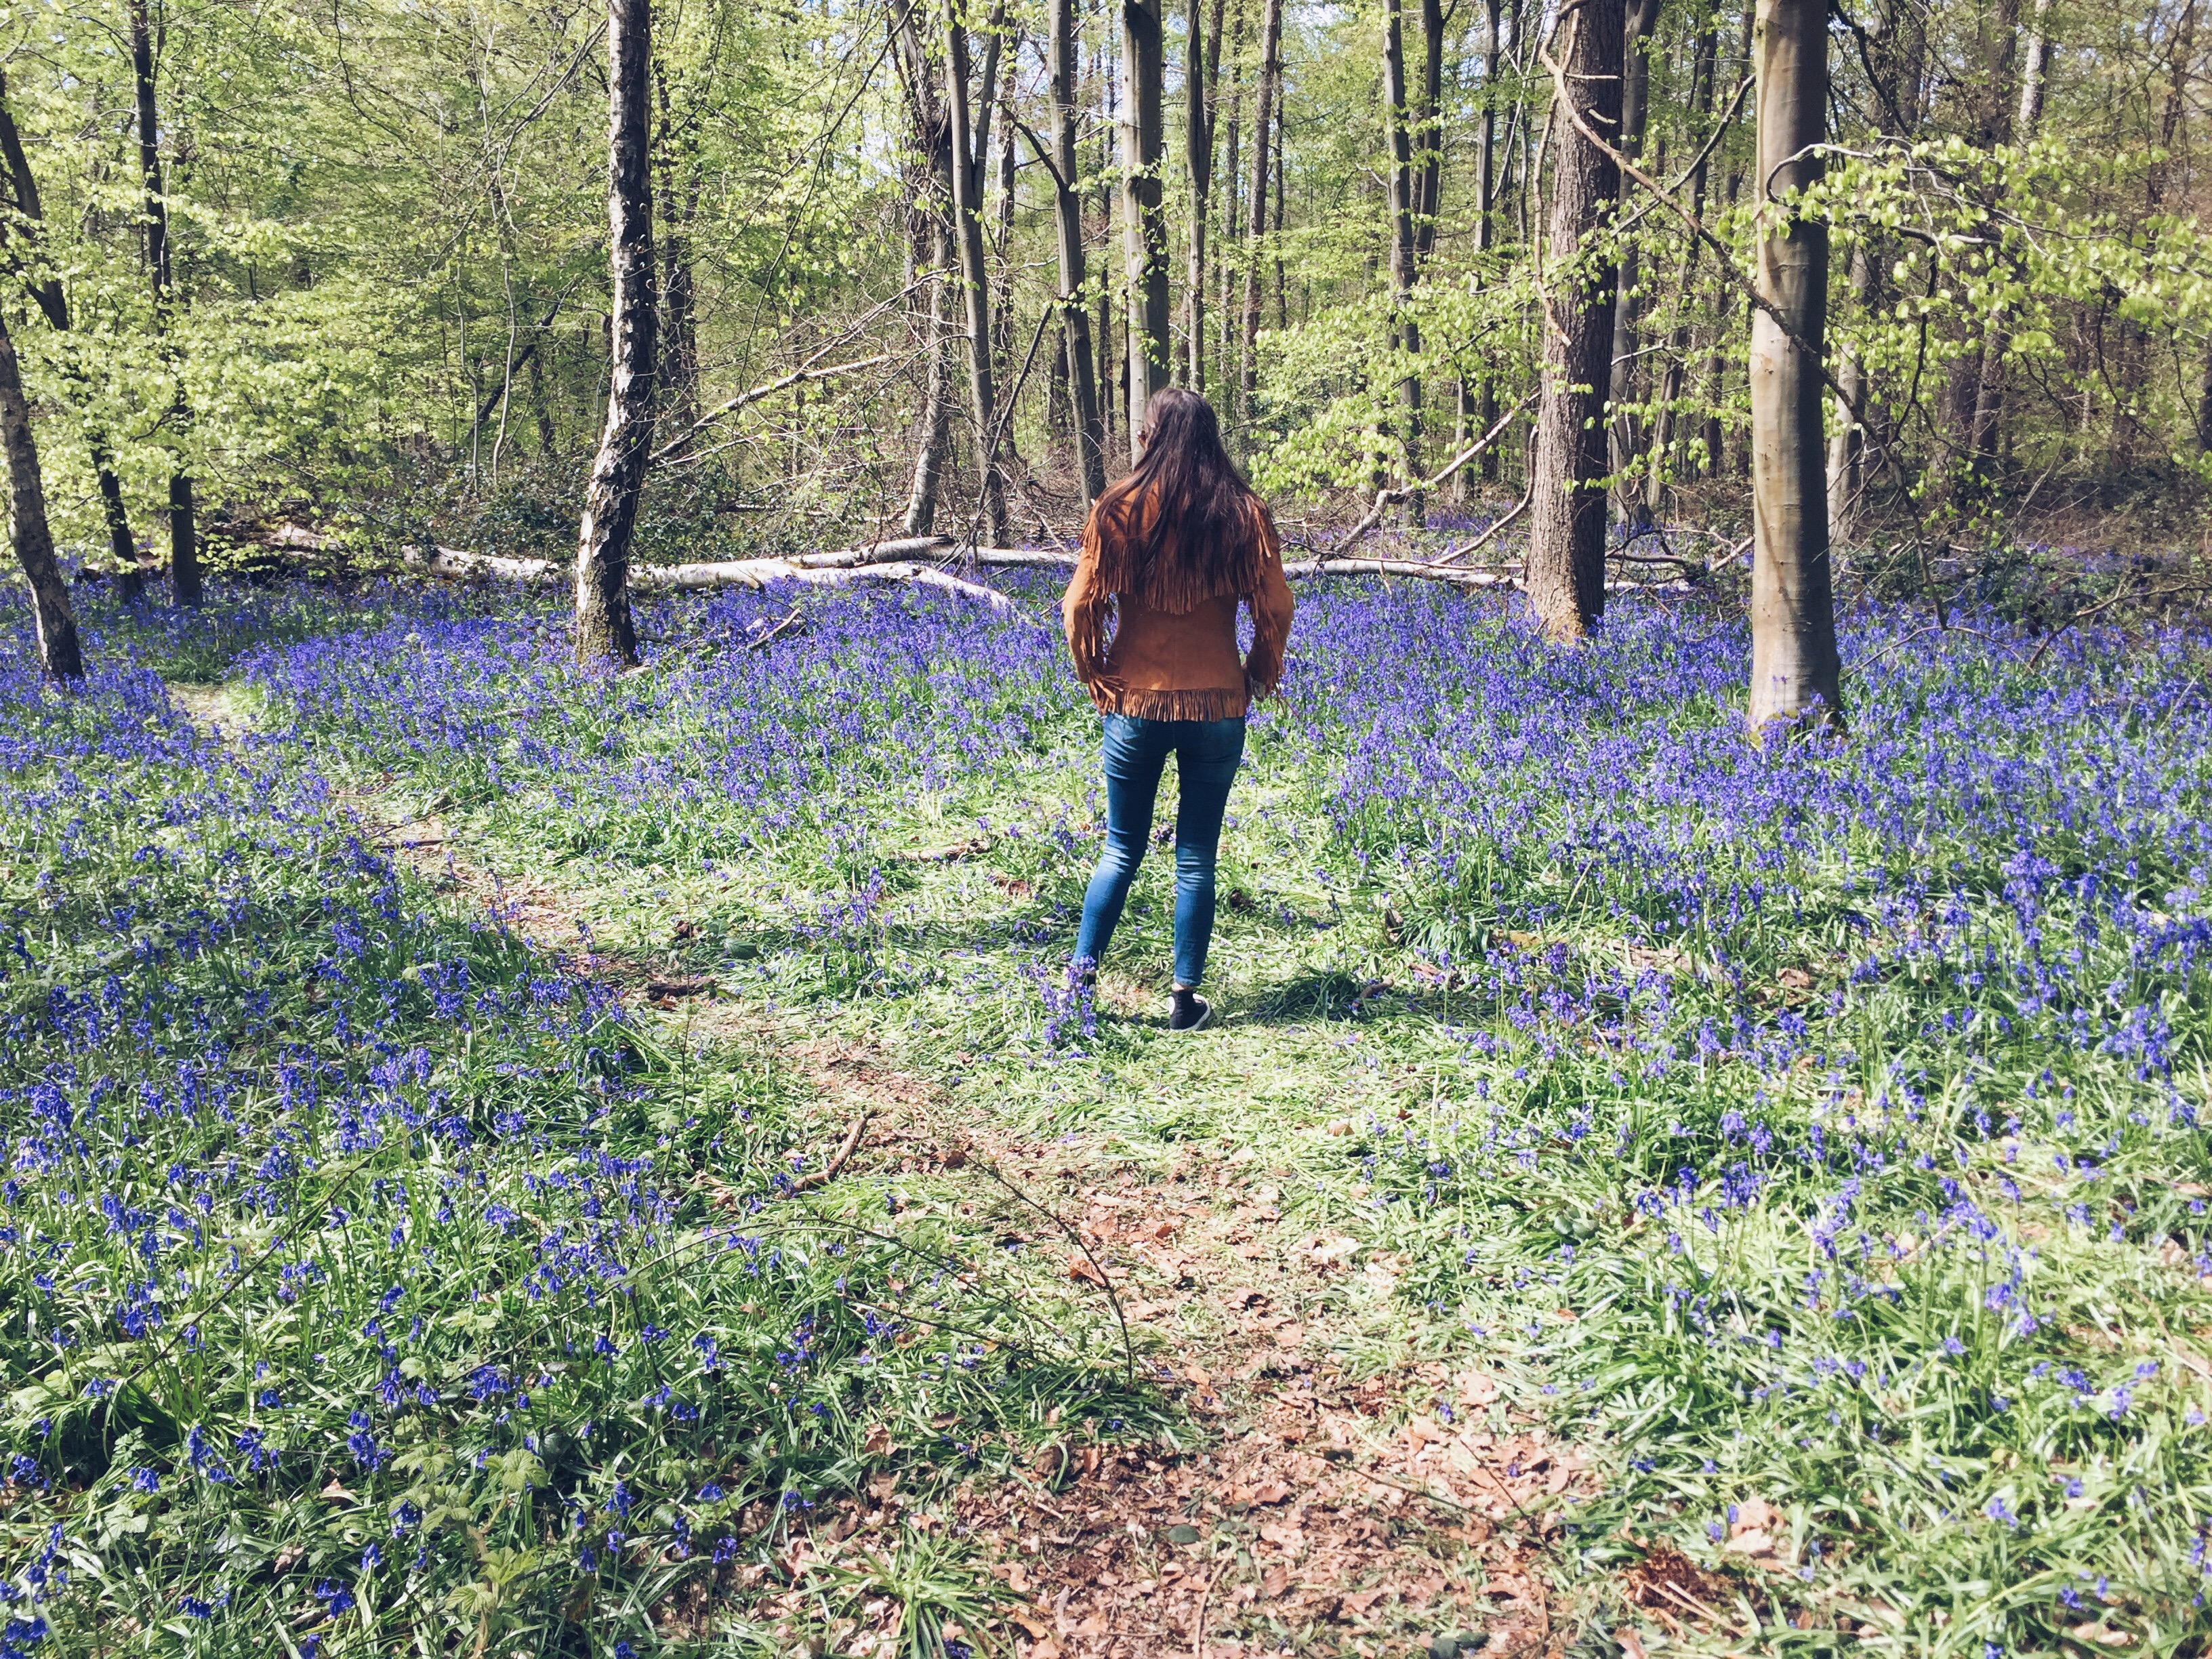 London bluebells in Whippendell Woods, Hertfordshire